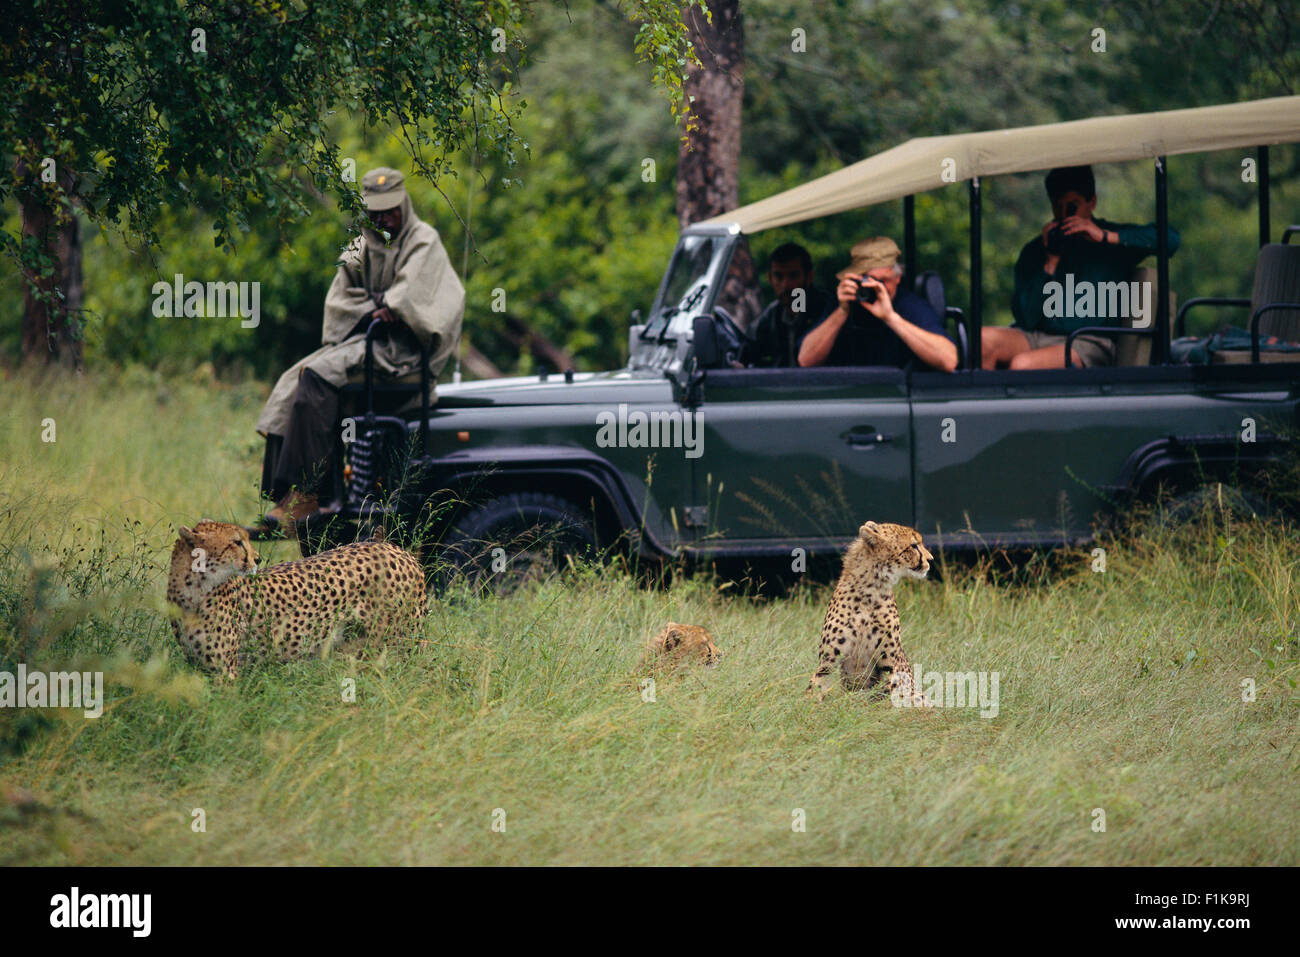 Tourists on Safari, Taking Pictures of Cheetahs Stock Photo